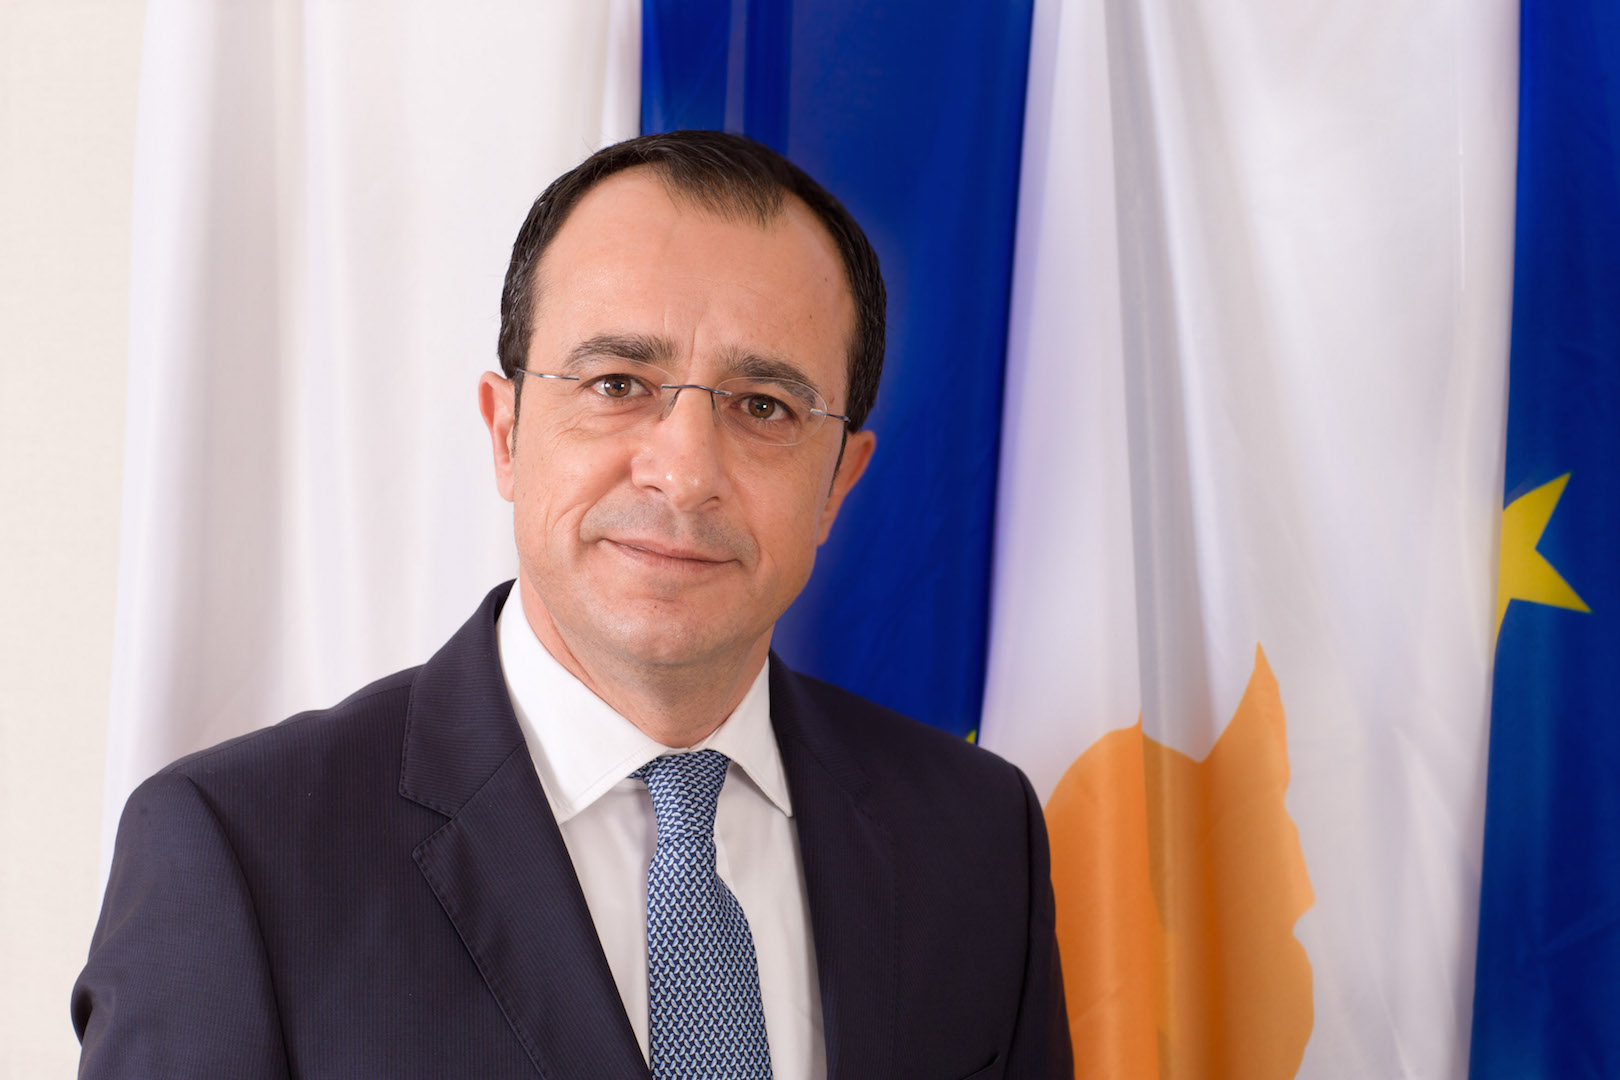 Χριστοδουλίδης: Το βασικό ζητούμενο είναι να ανταποκριθούμε με επιτυχία στις προσδοκίες του κυπριακού λαού